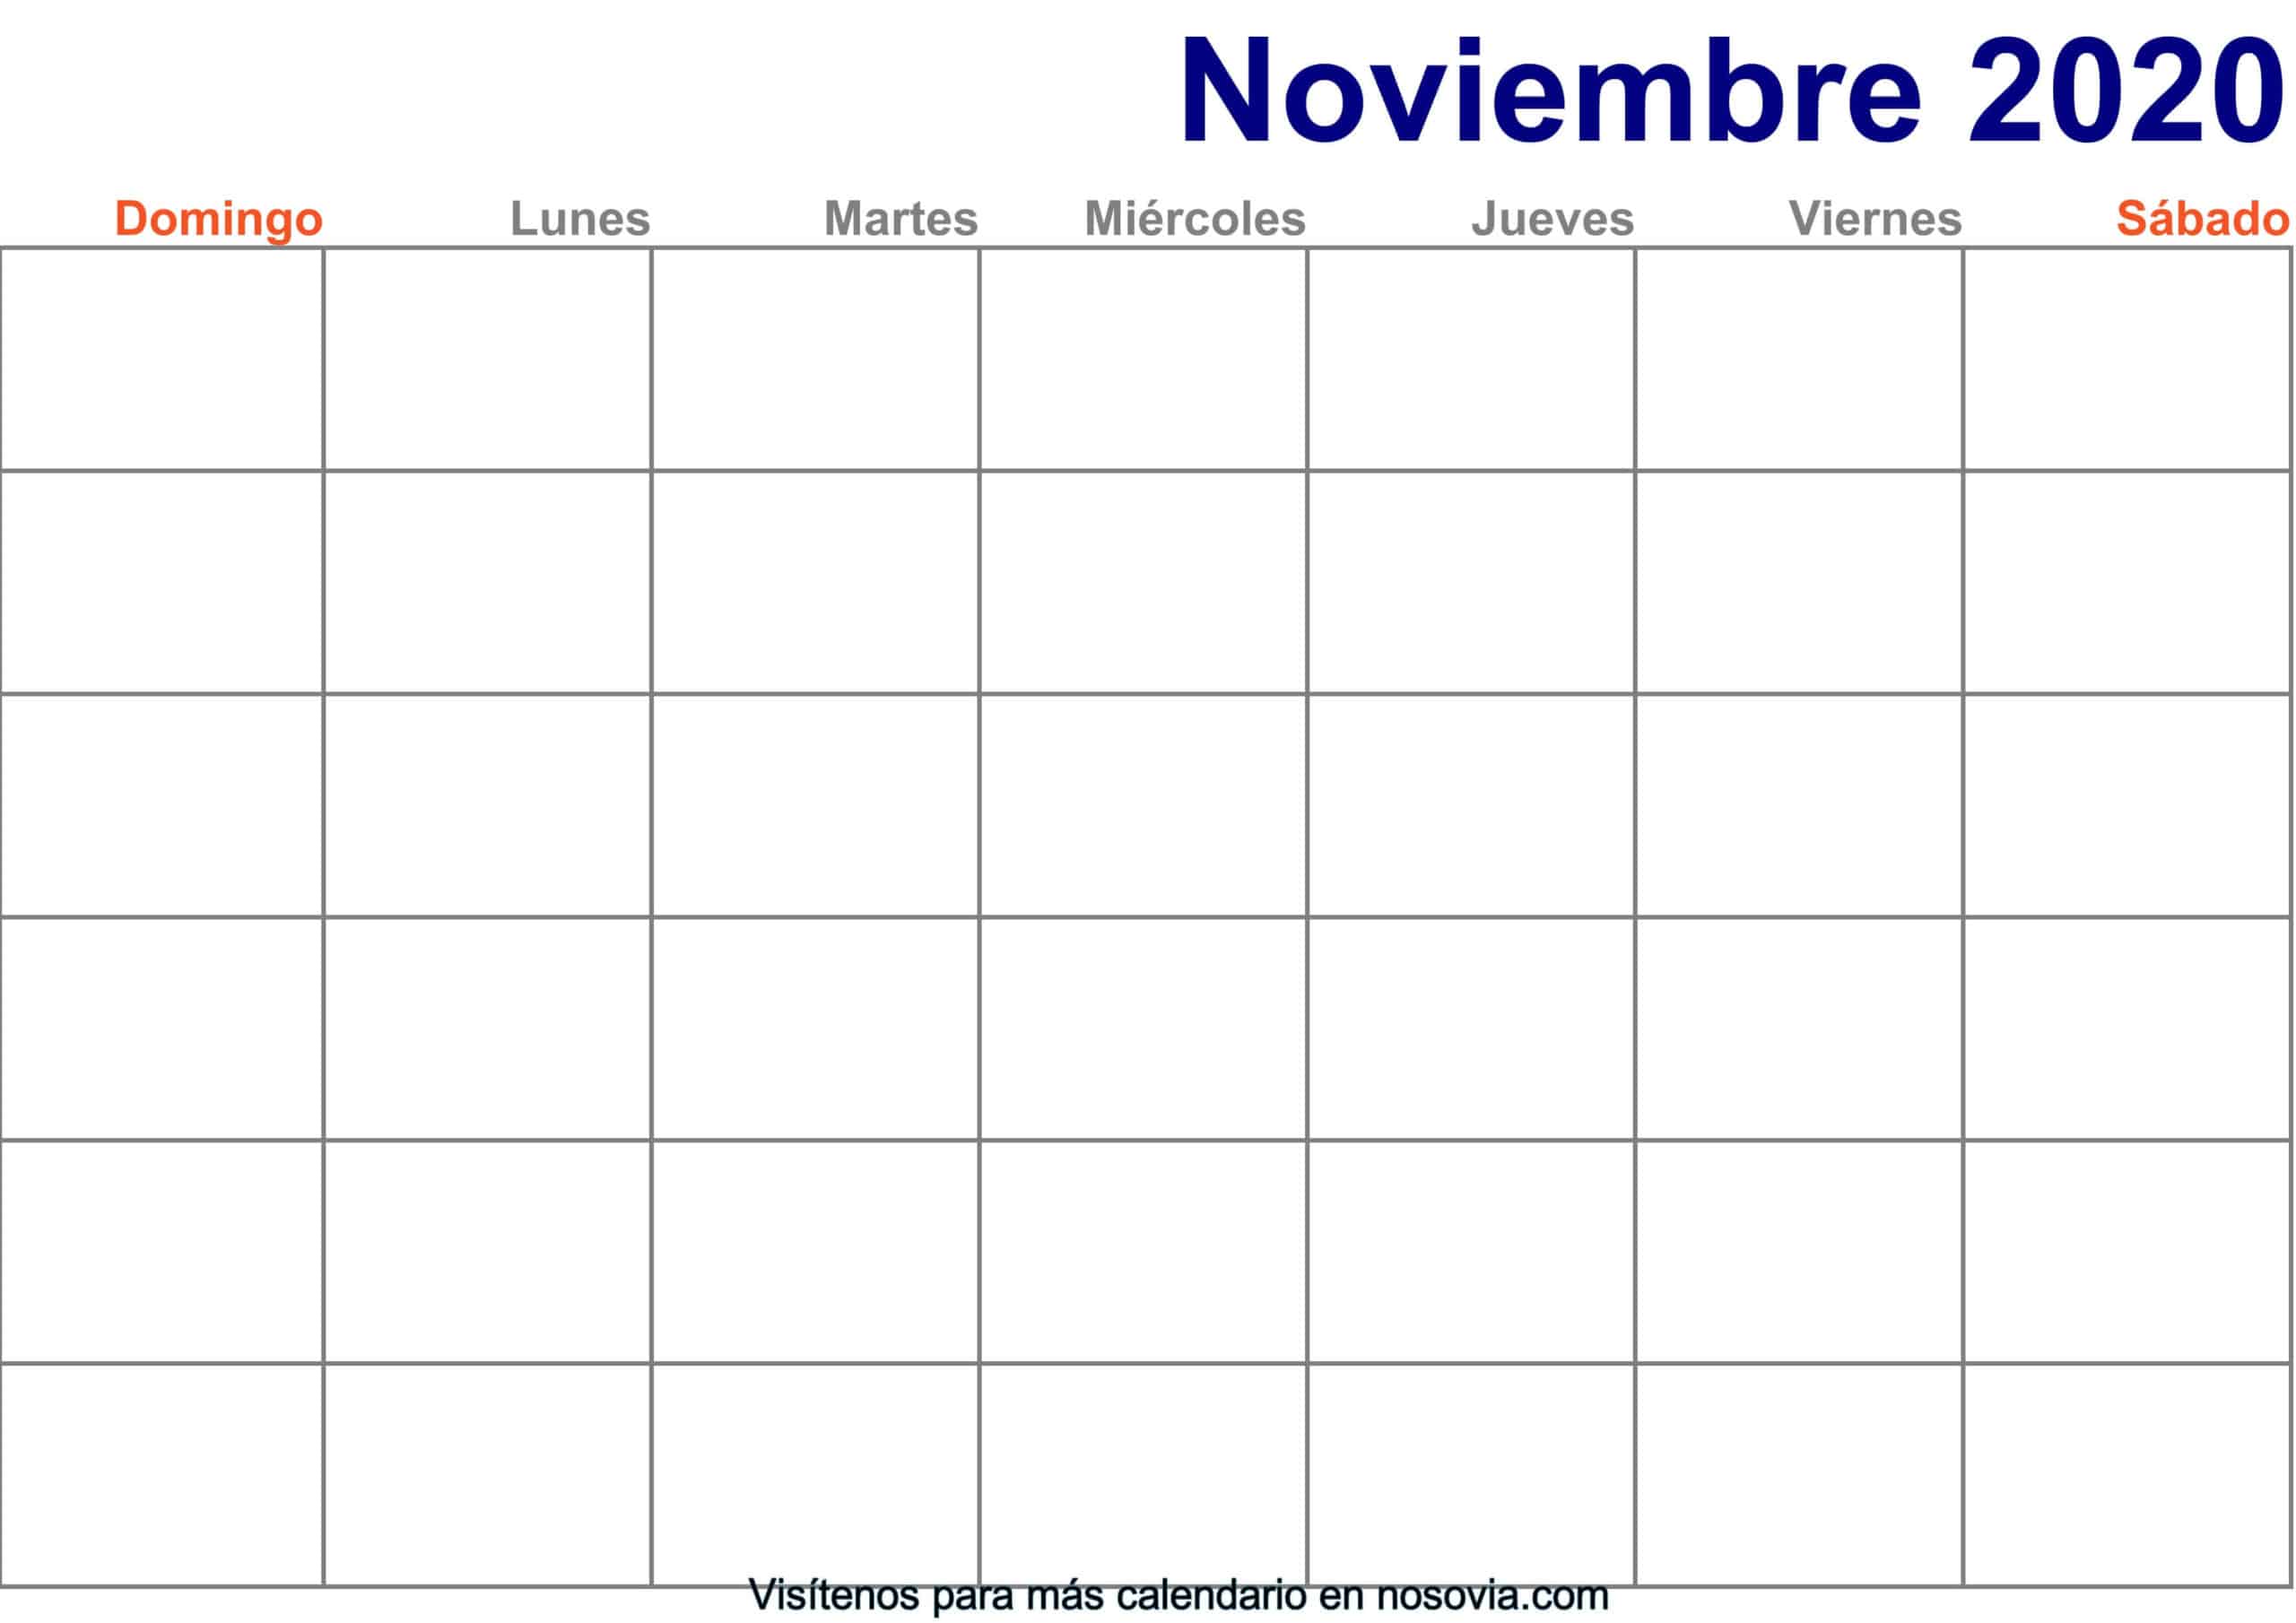 Calendario-noviembre-2020-en-blanco-Imprimir-gratis